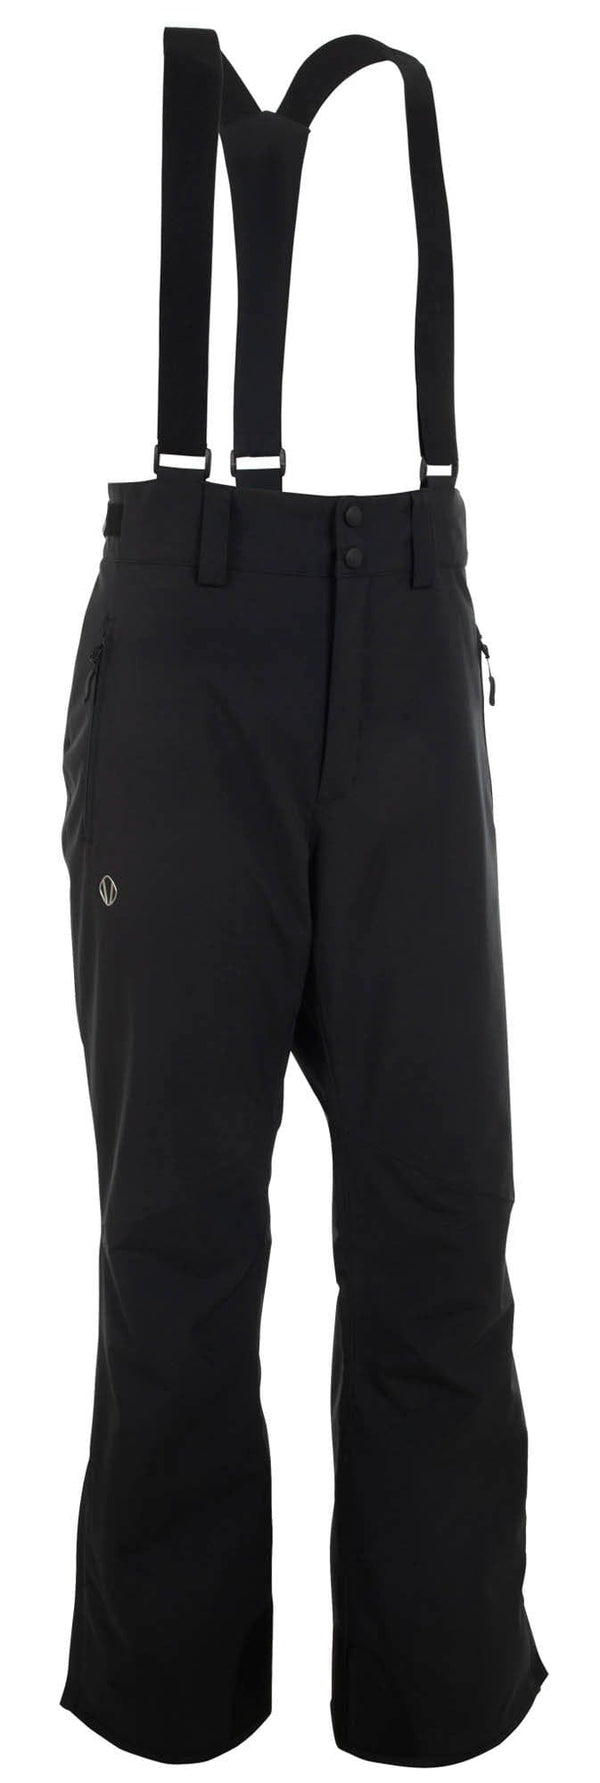 Sunice CLOTHING - Men - Outerwear - Pant Sunice *23W*  Men's Brett Overall Ski Pants  - Inseam 32" -